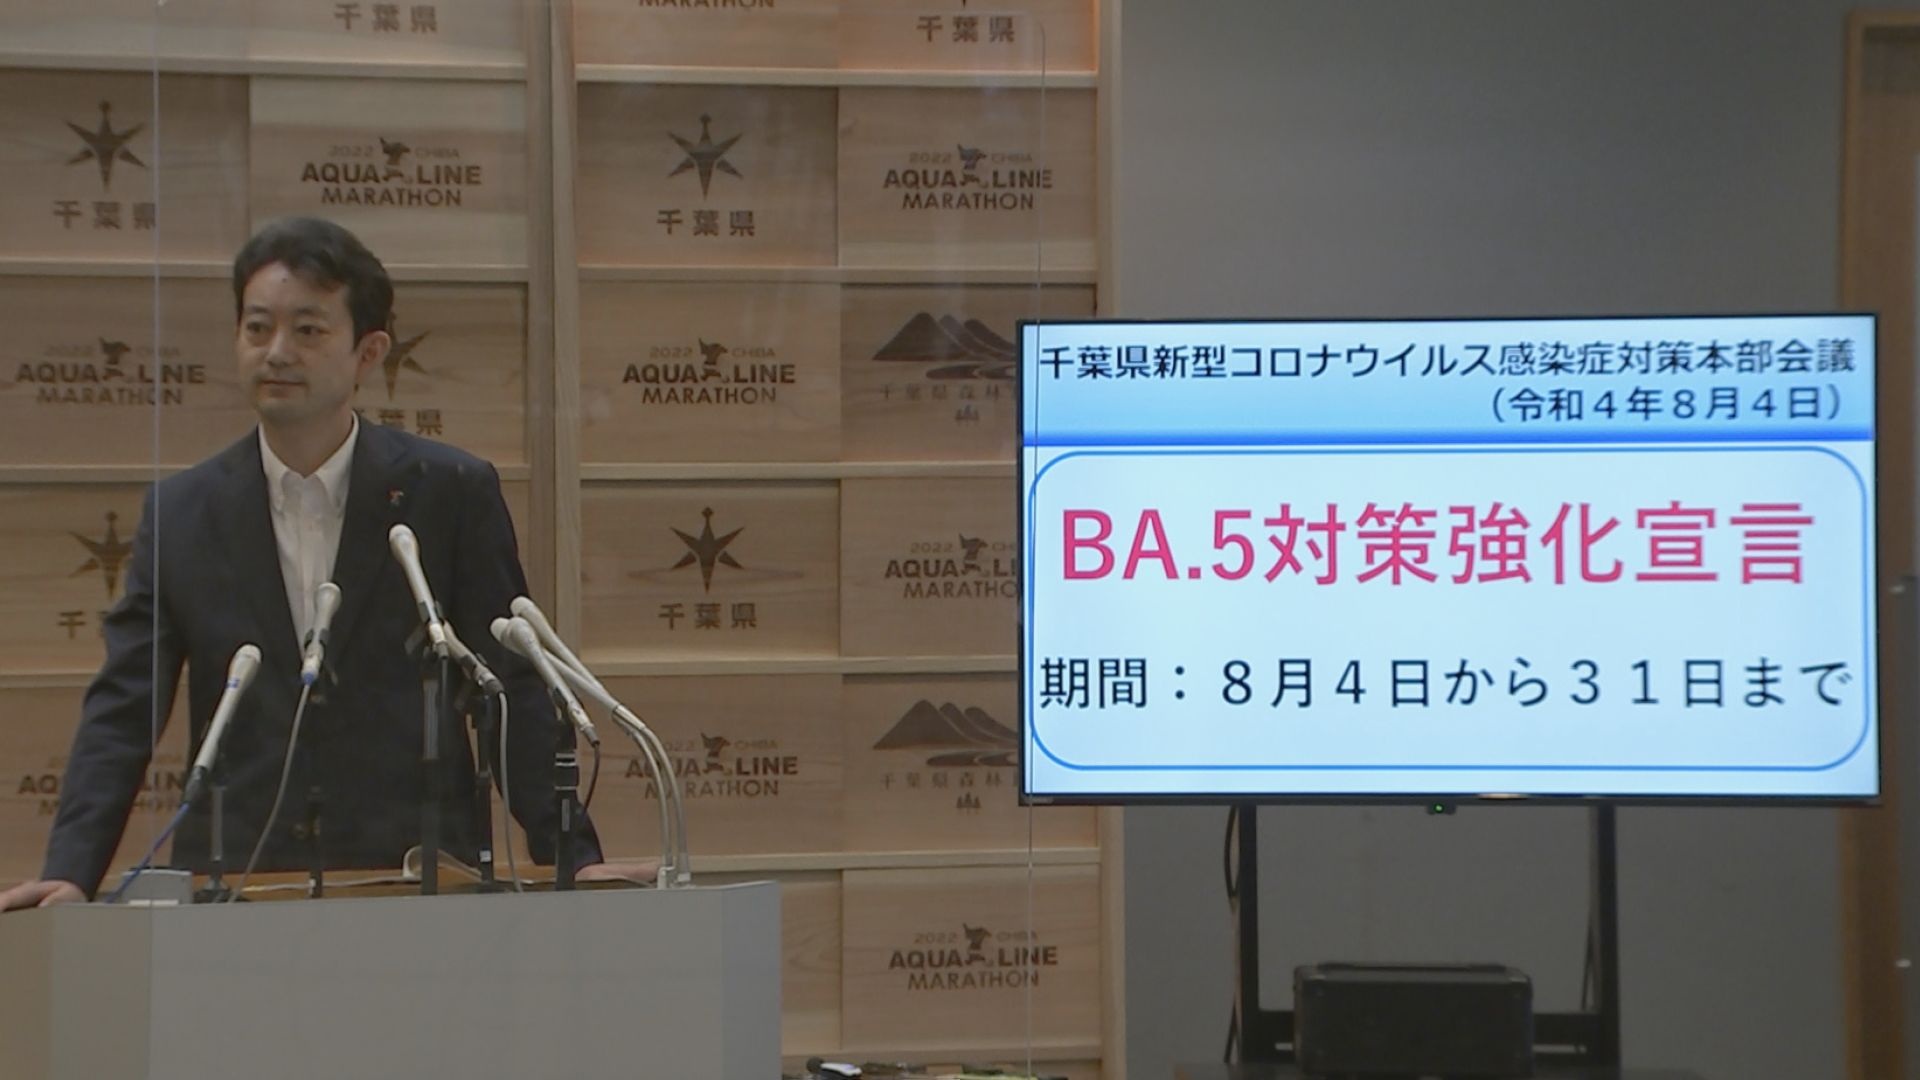 千葉県「BA.5対策強化宣言」を発表　お盆期間中の感染対策の徹底も呼びかけ